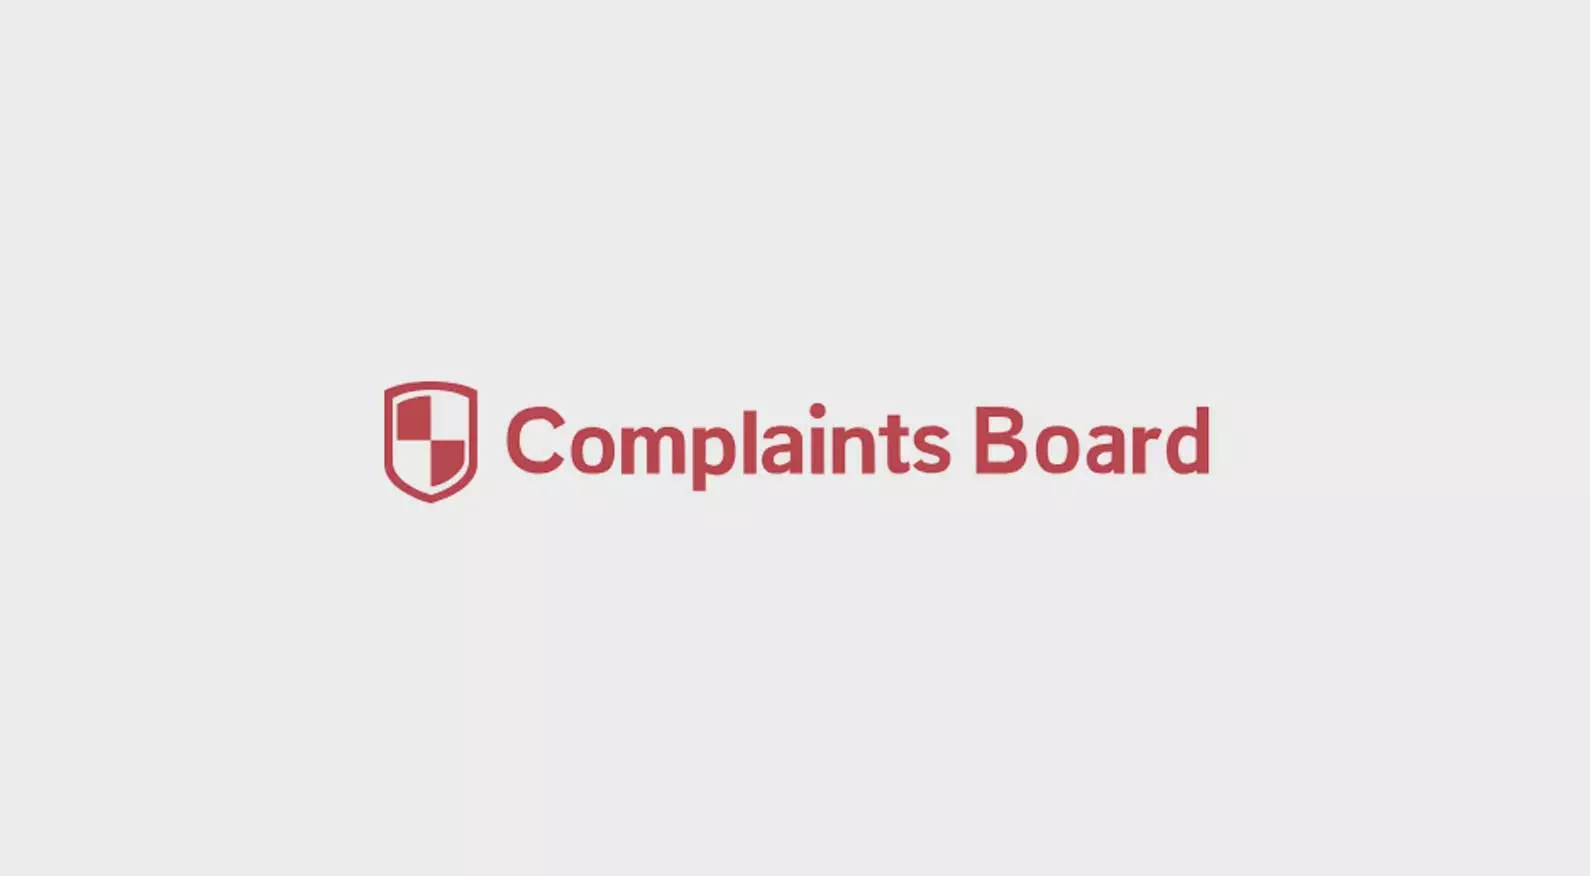 complaintsboard.com content removal